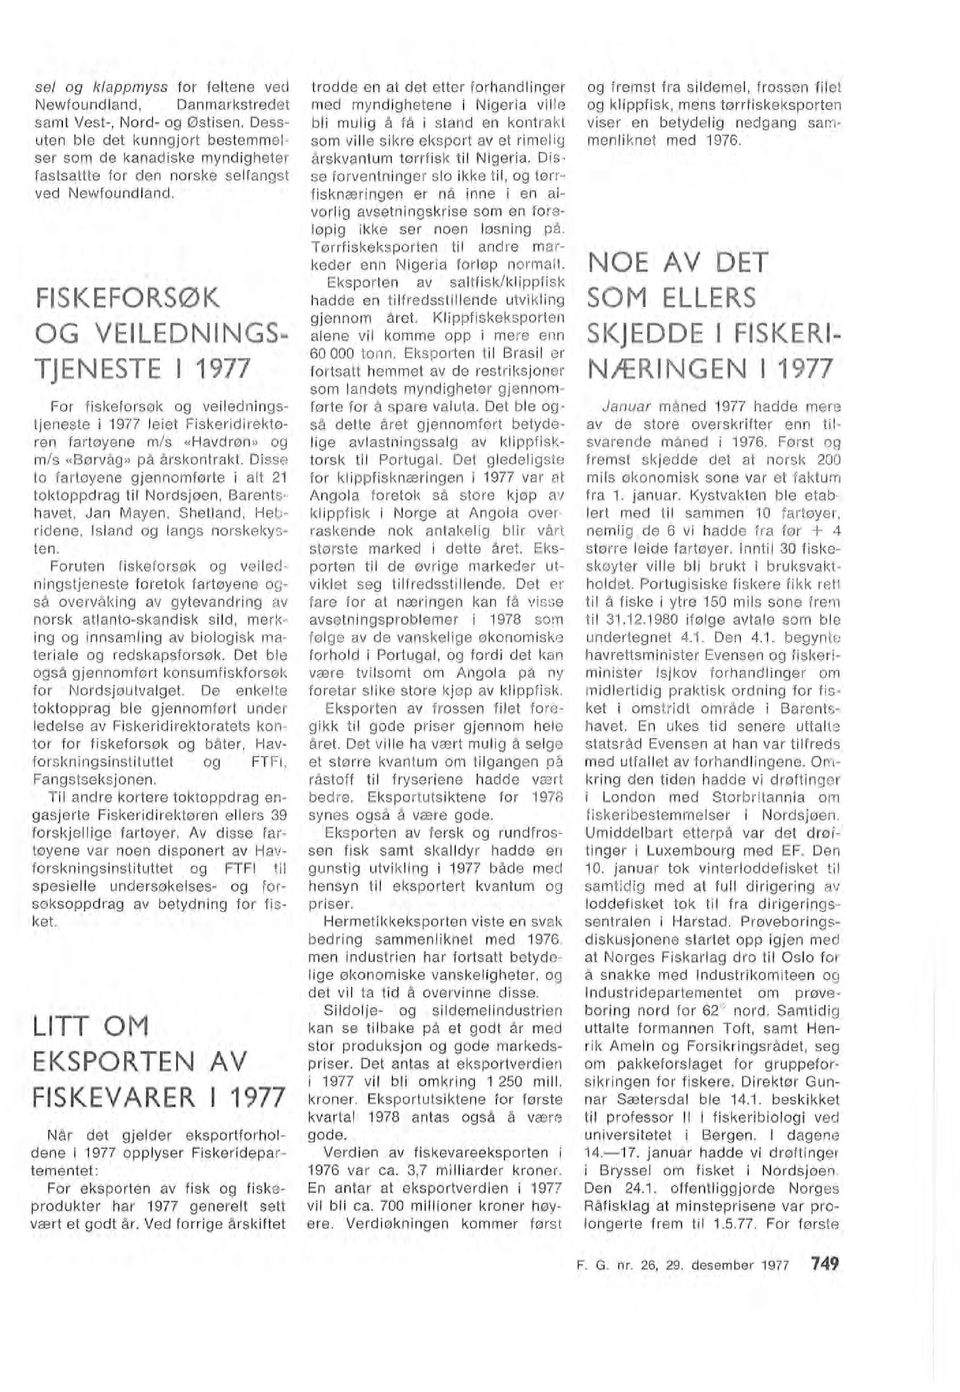 FISKEFORSØK OG VEILEDNINGS TJENESTE 1977 For fiskeforsøk og veiedningstjeneste i 1977 eiet Fiskerid i rektøren fartøyene m/s «Havdrøn» og m/s «Børvåg» på årskontrakt.